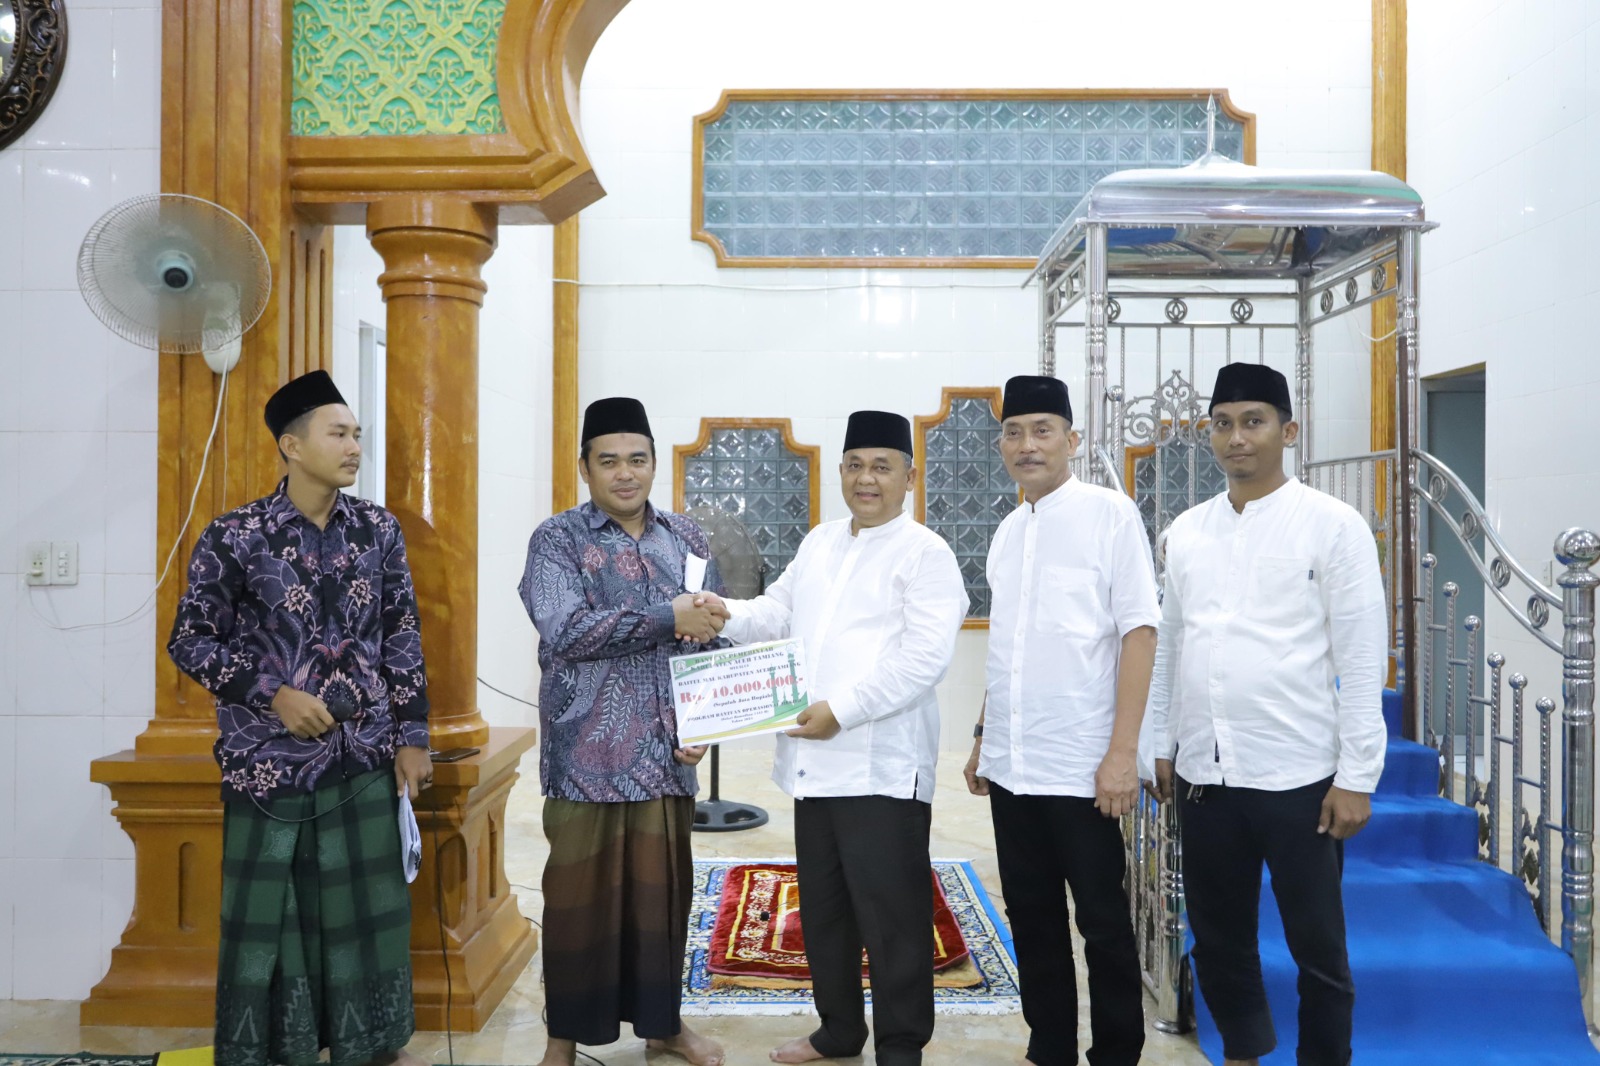 Teks foto : Pj Bupati Aceh Tamiang Drs Asra saat menyerahkan bantuan dari baitul Mal kabupaten. Di Masjid Istiqomah, Kampung Tumpuk Tengah, Kecamatan Bendahara.